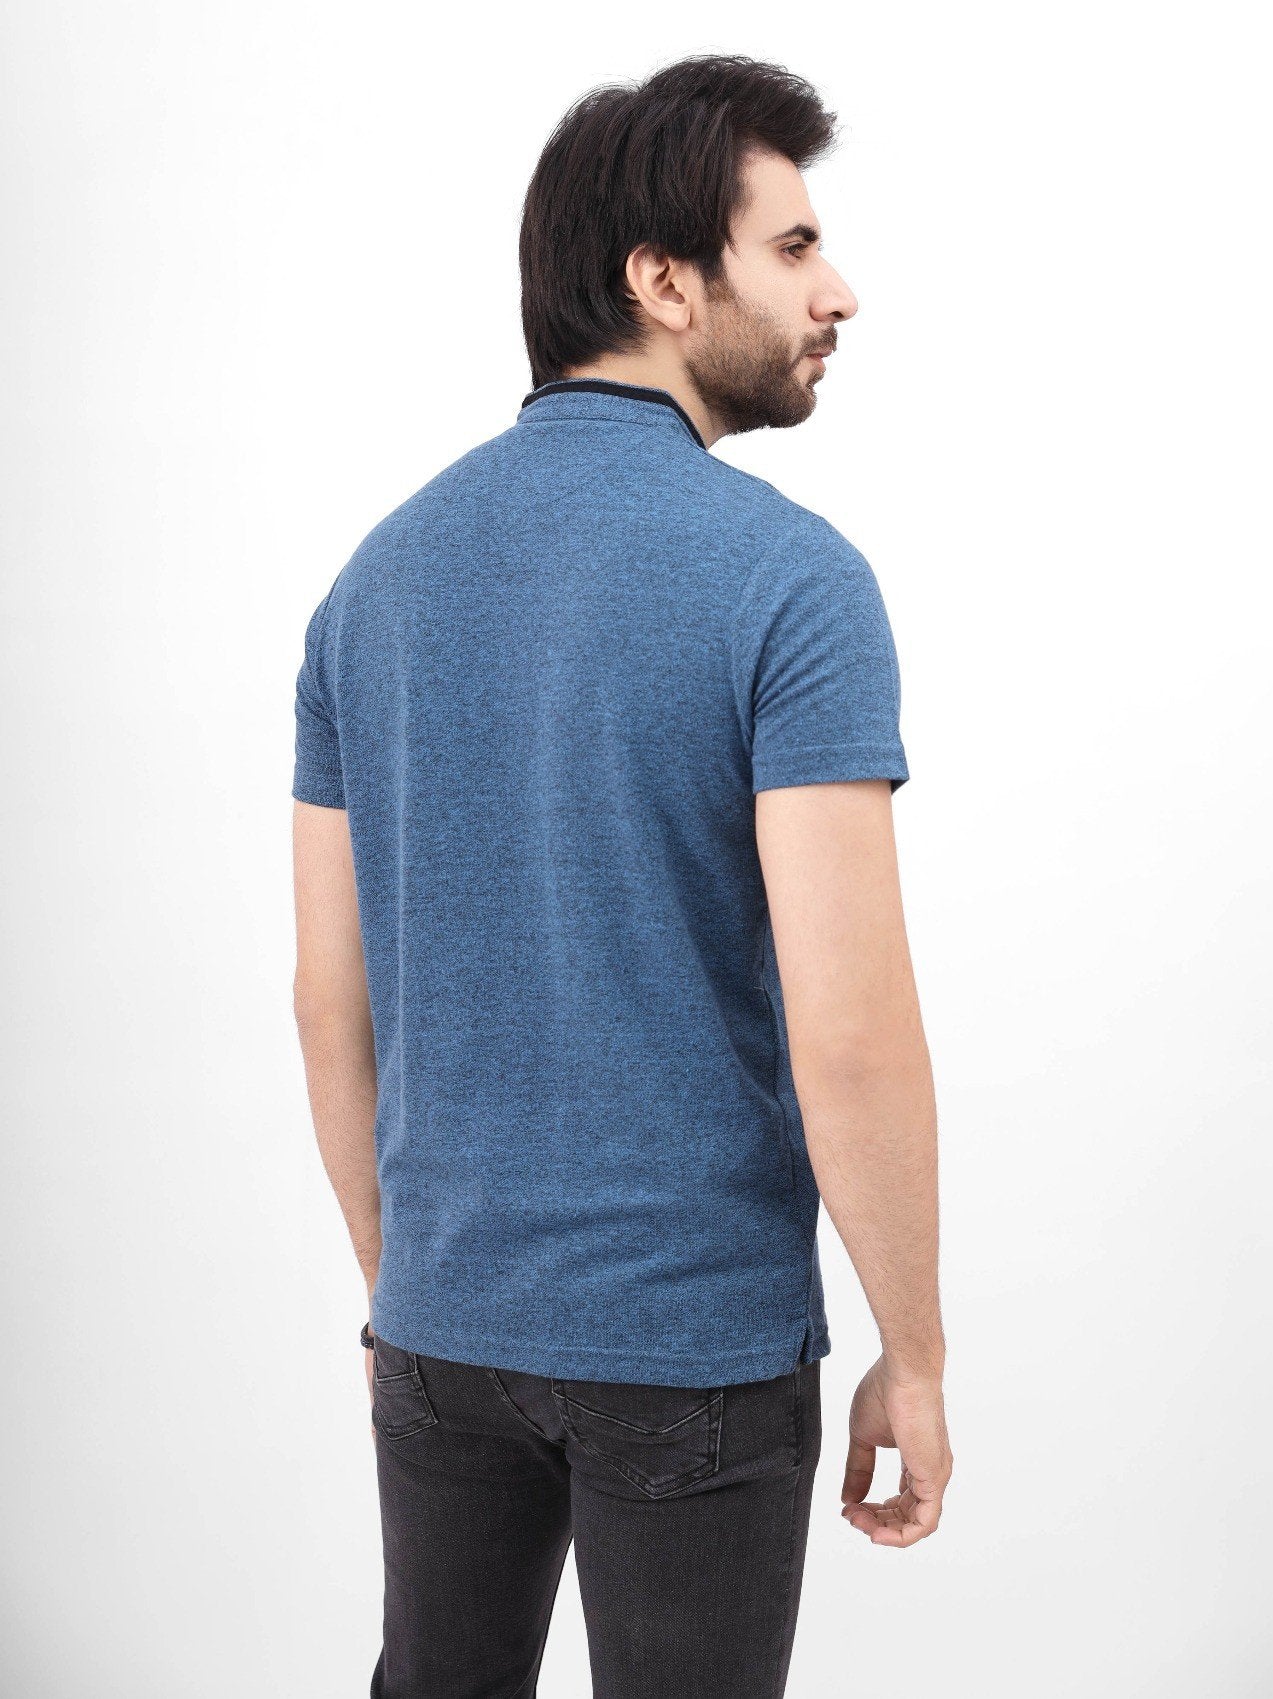 edenrobe Men's Light Blue Polo Shirt - EMTPS21-047 – edenrobe Pakistan